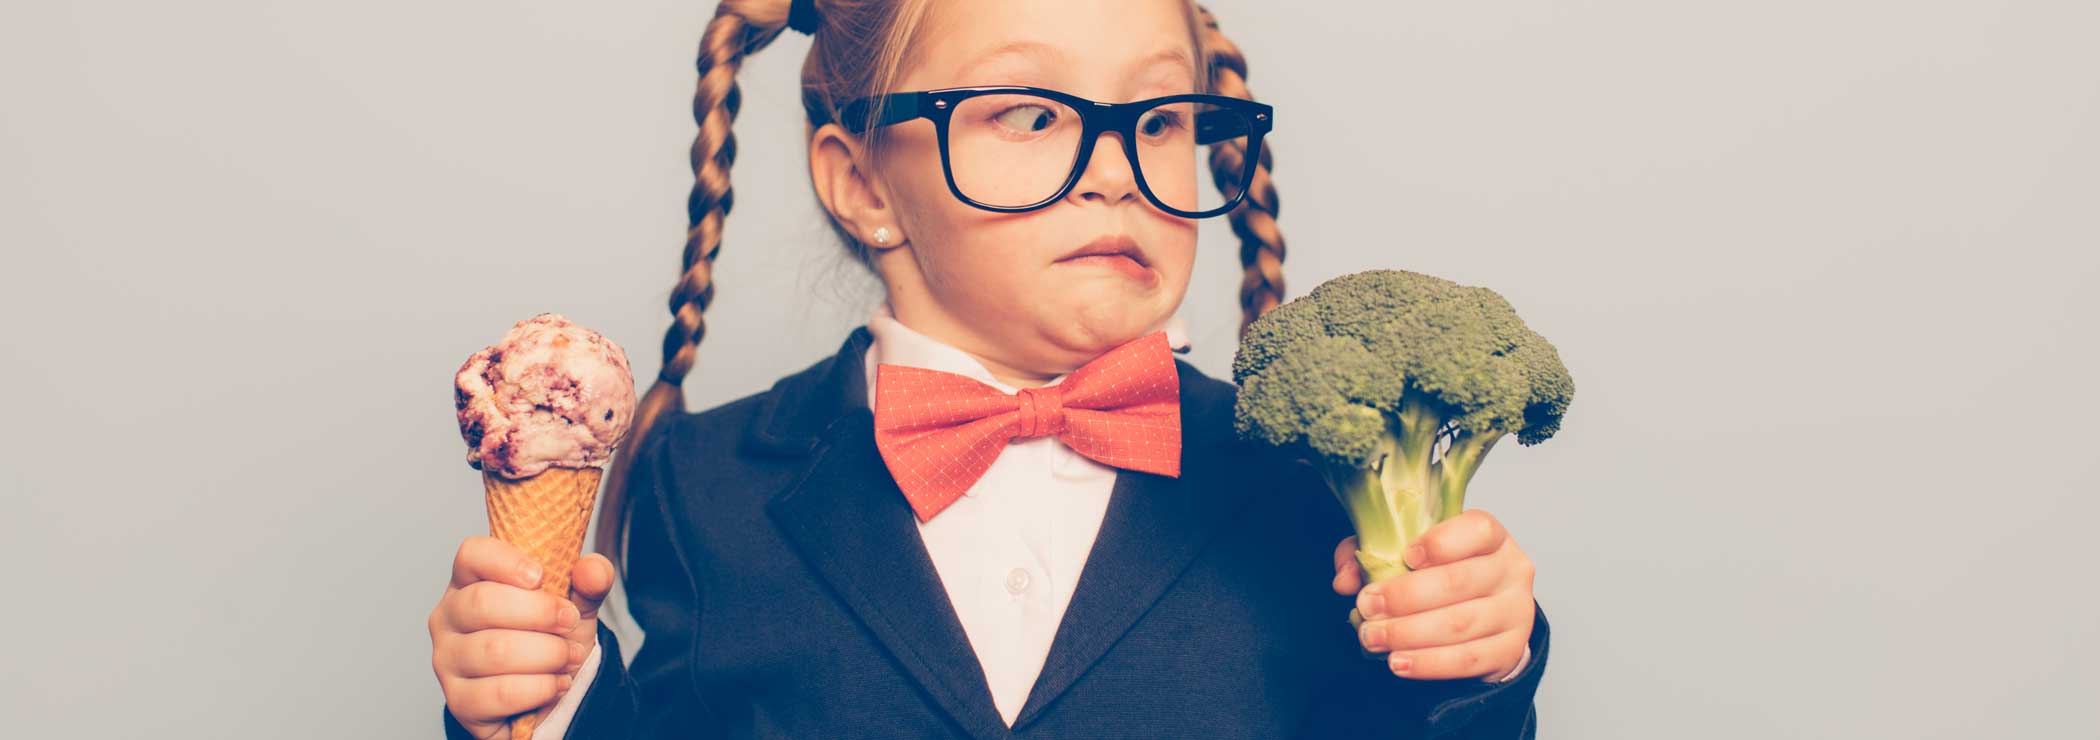 Ein Mädchen hat die Wahl von Glace oder Gemüse